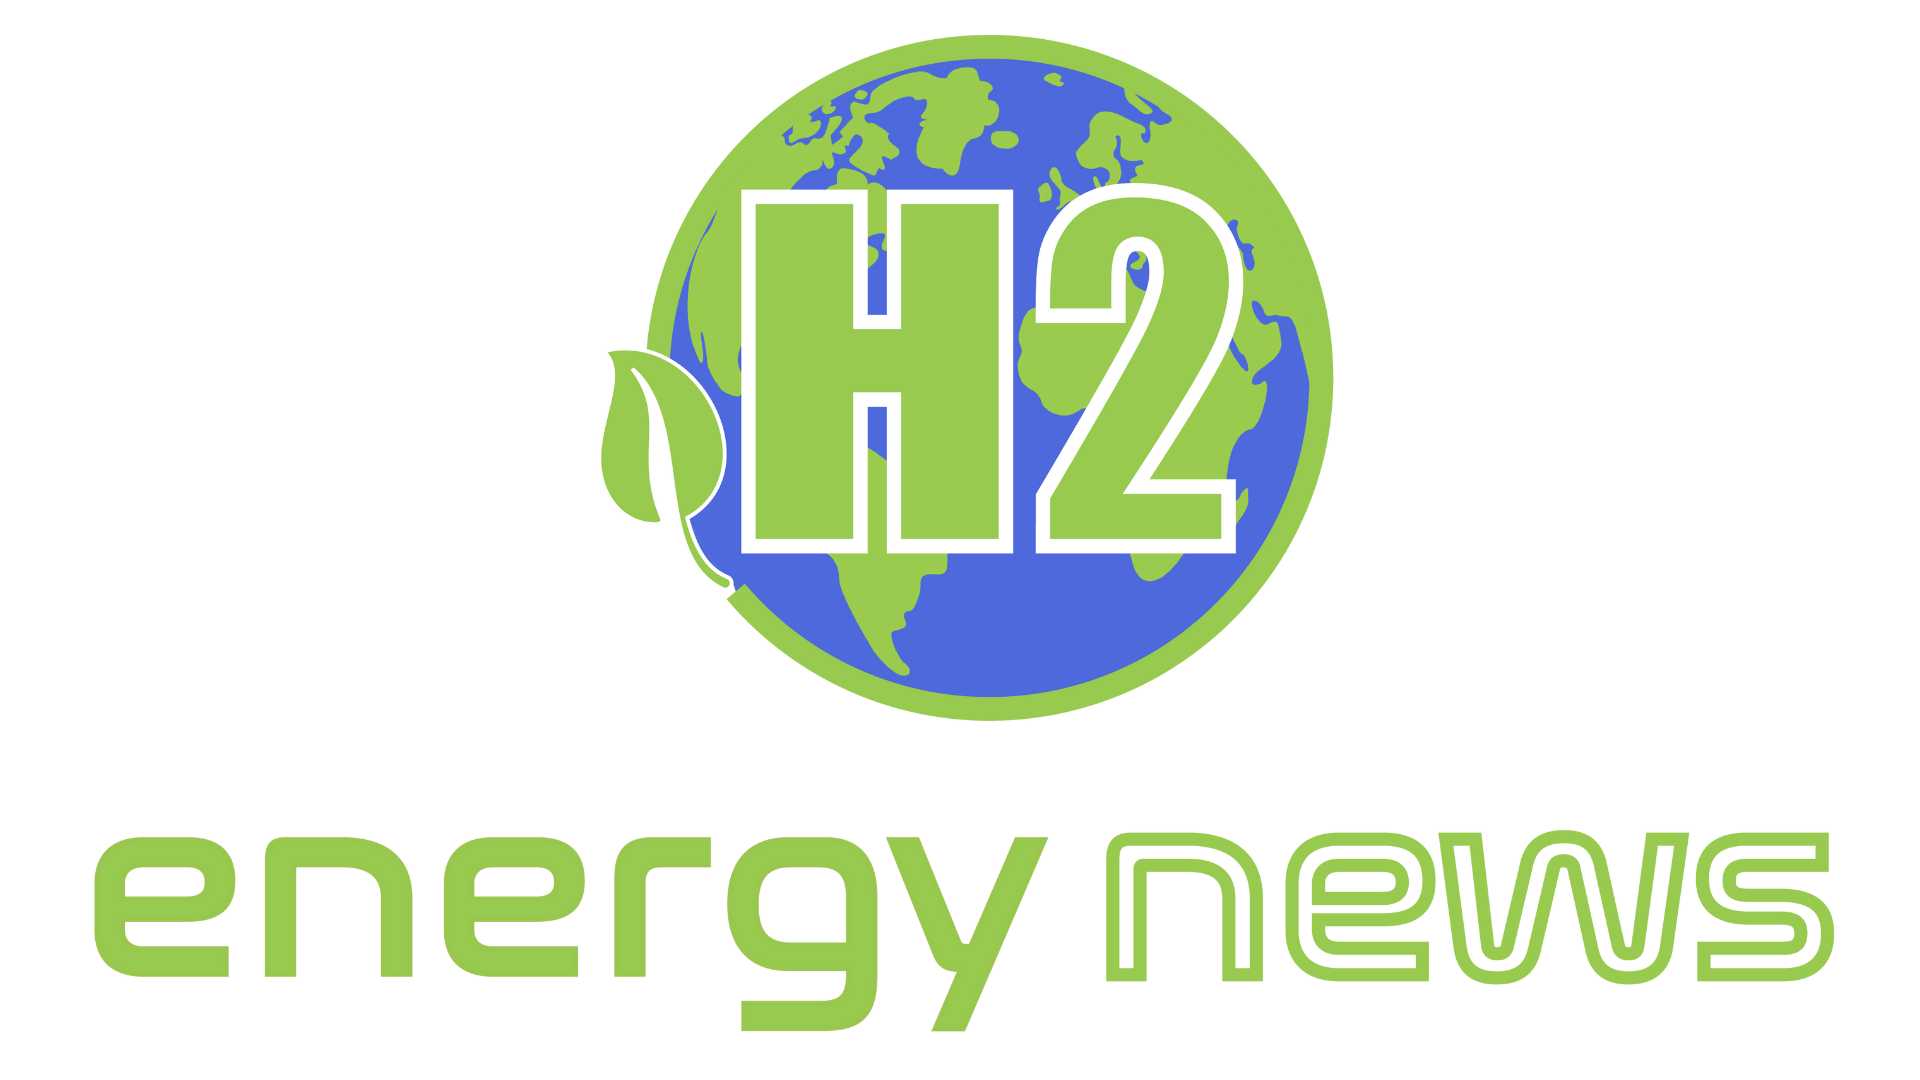 energynews.biz